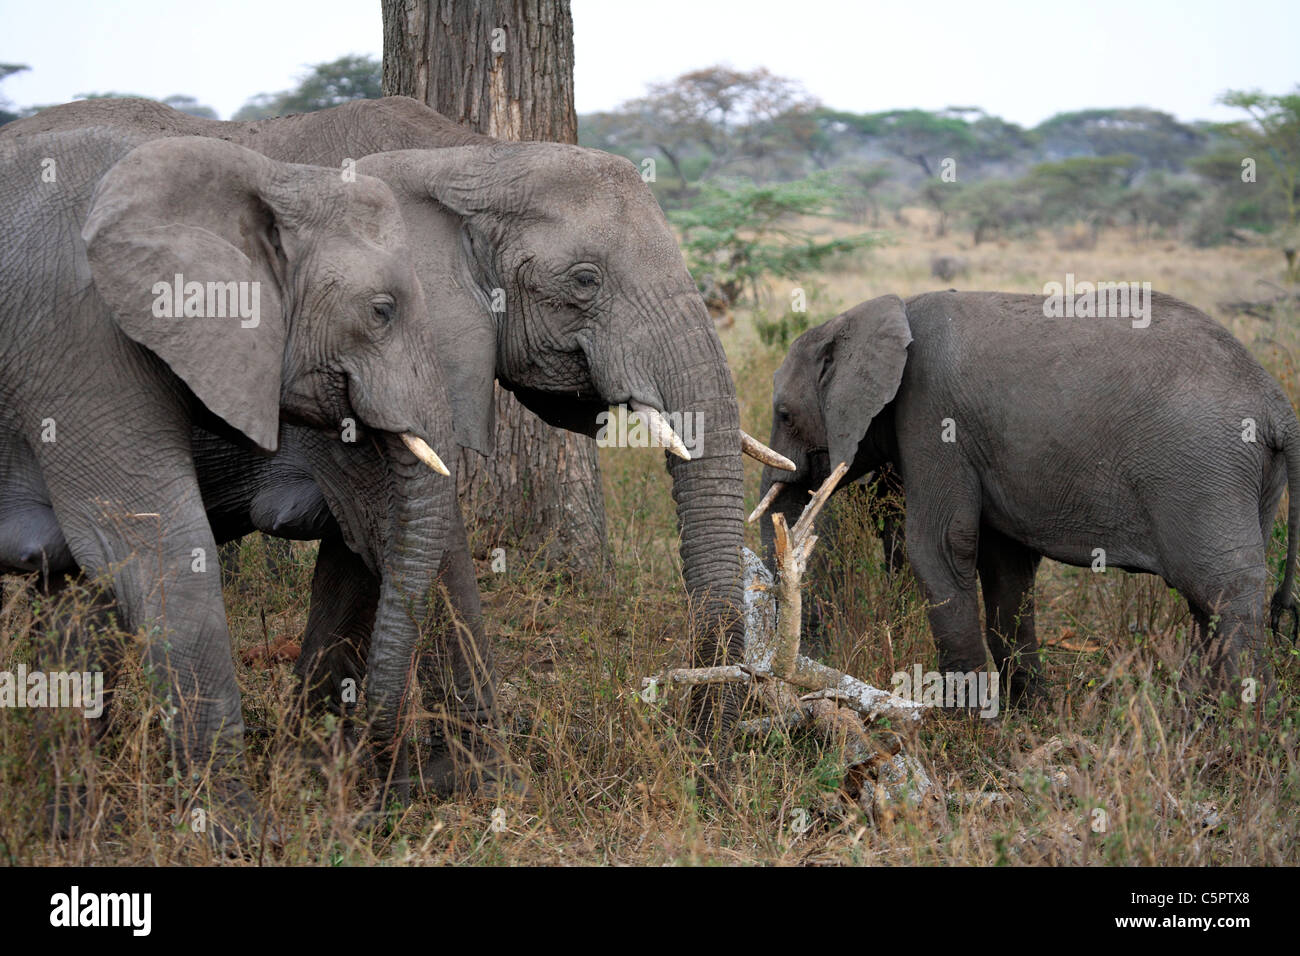 Loxodonta africana (Elephant), Serengeti National Park, Tanzania Stock Photo